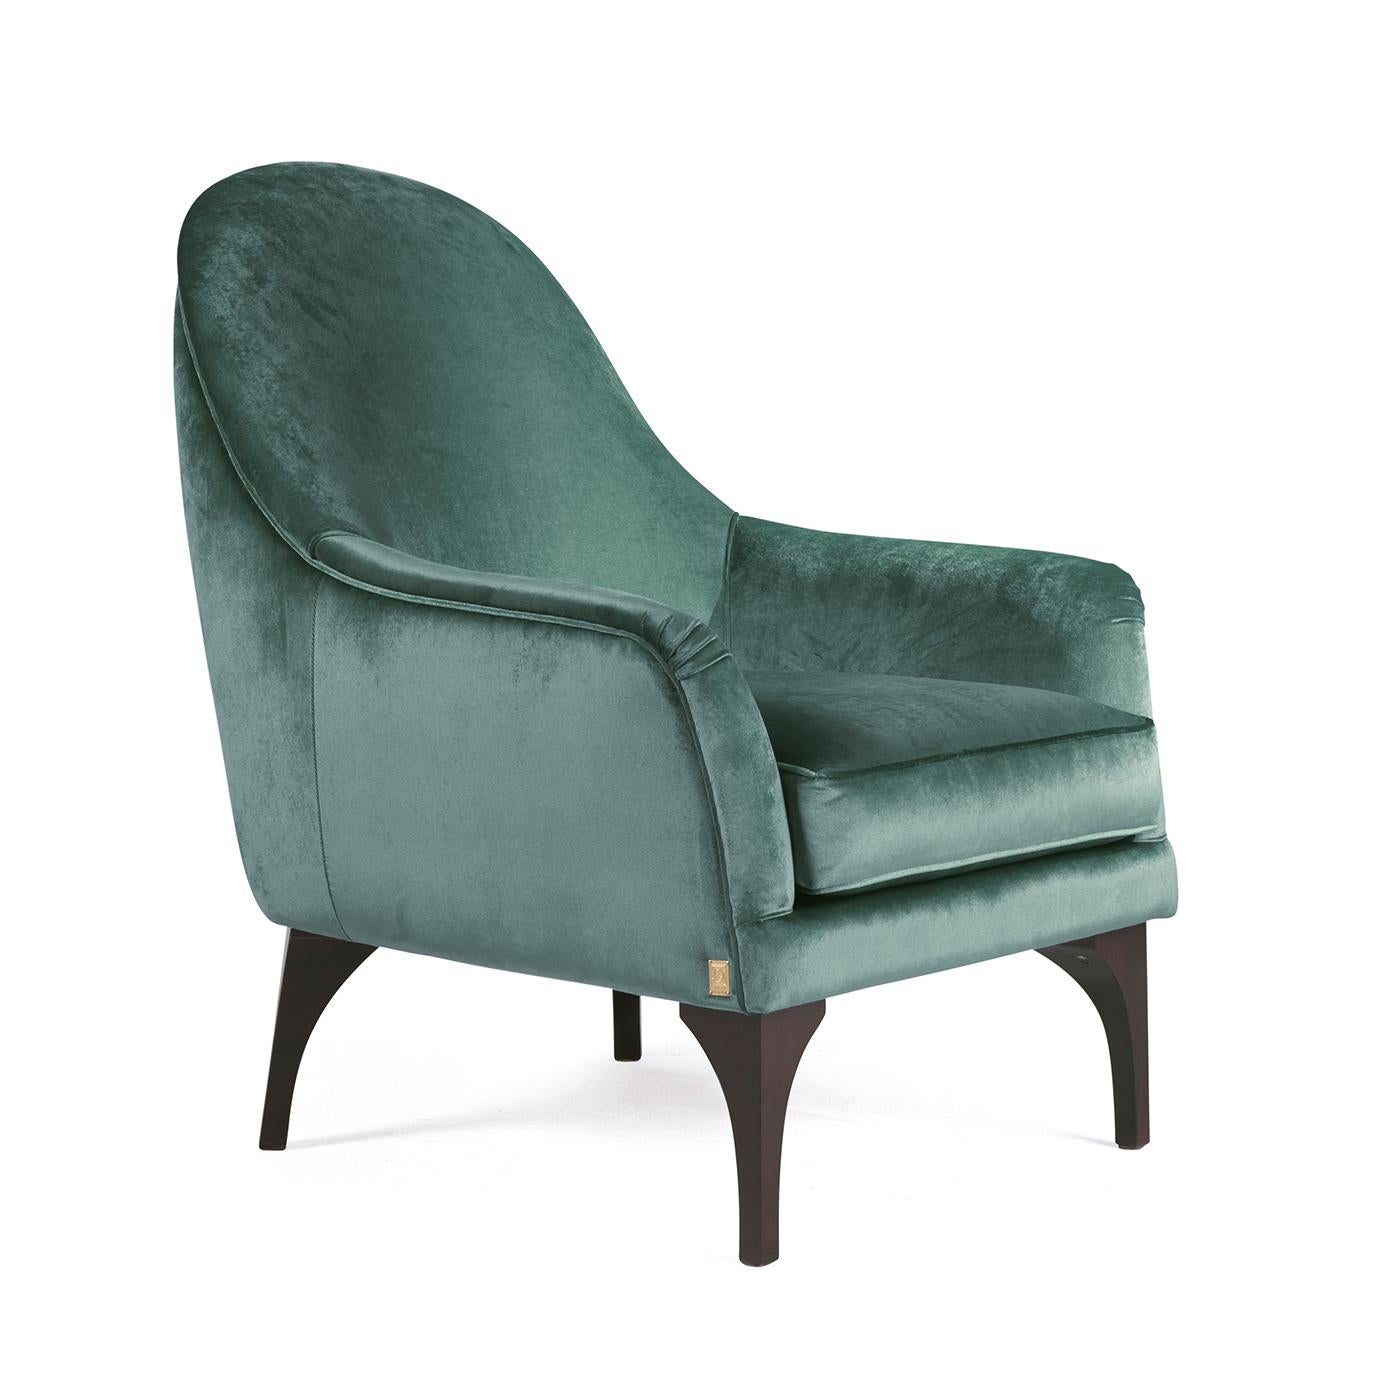 Dieser elegante Sessel mit seinen zarten Kurven ist bequem und raffiniert zugleich und setzt einen exquisiten Akzent in einem klassischen Wohnzimmer. Die Struktur ist aus Massivholz, gepolstert mit hypoallergenem Polyurethan und einem mit